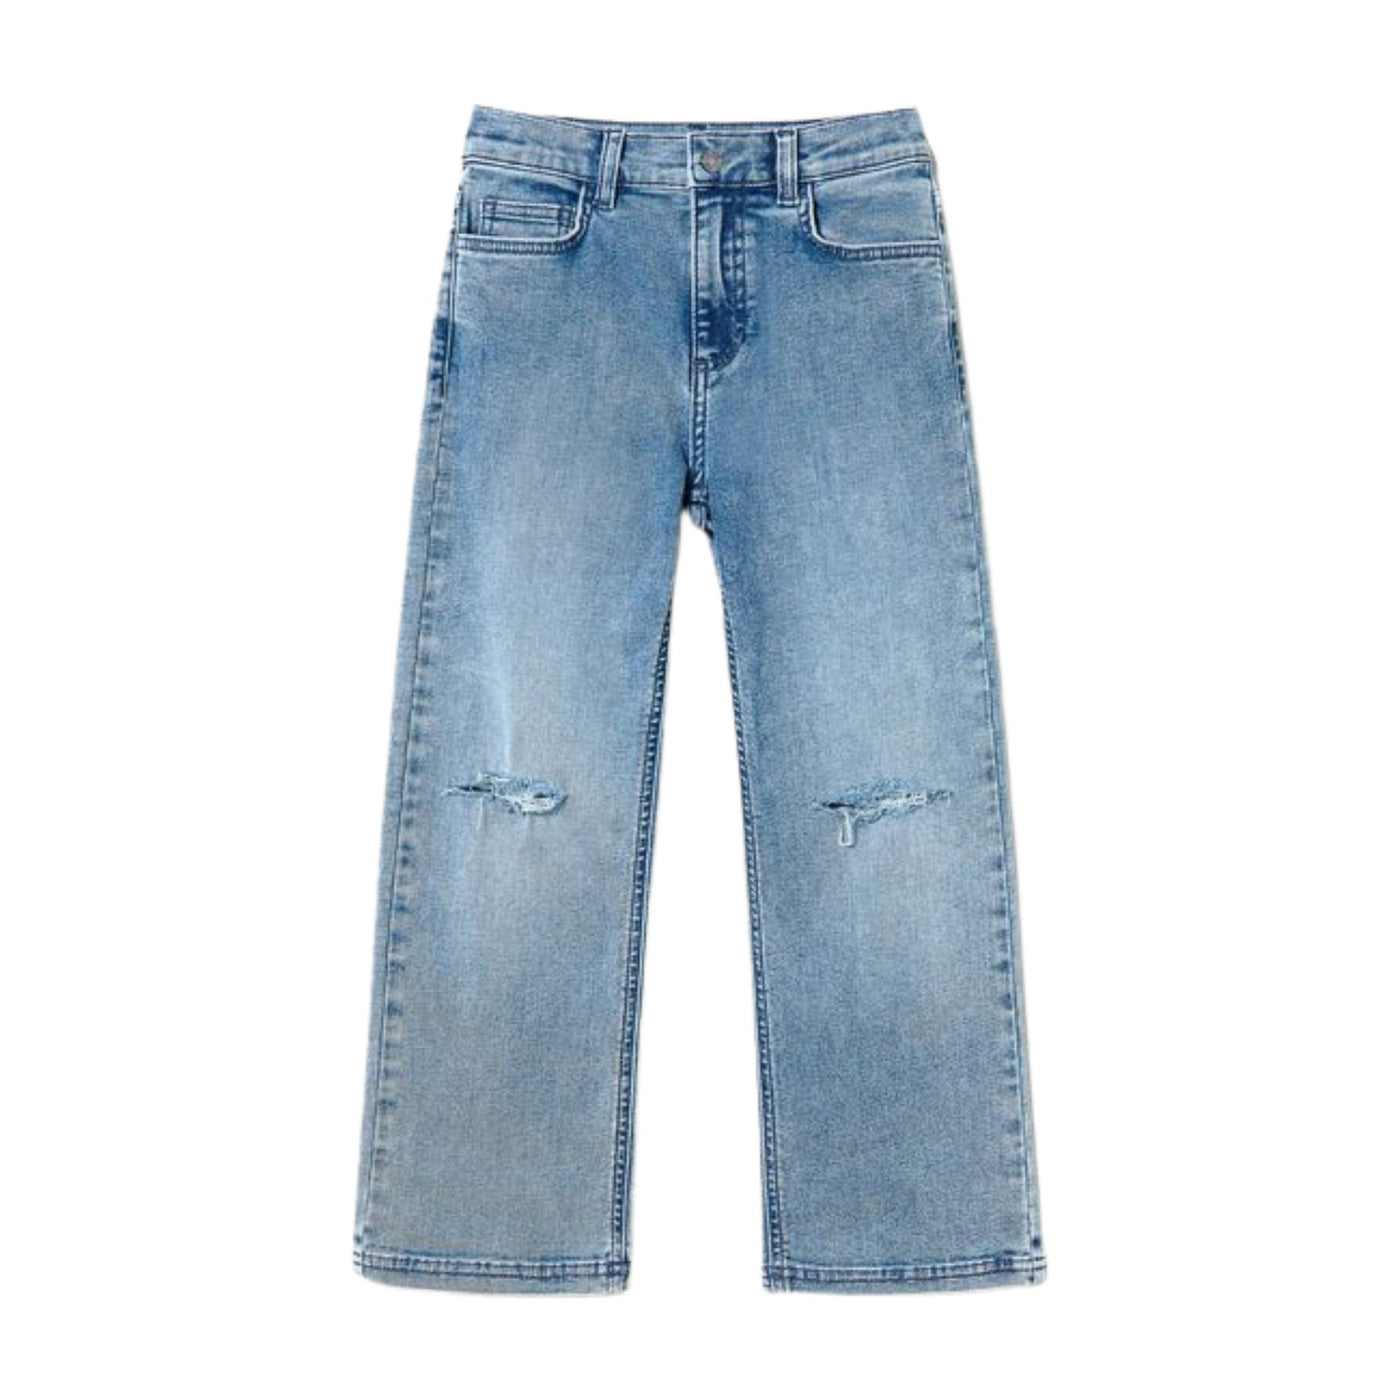 Jeans da bambina firmati Twinset in denim chiaro con spacchi sulle ginocchia. Vista frontale. 